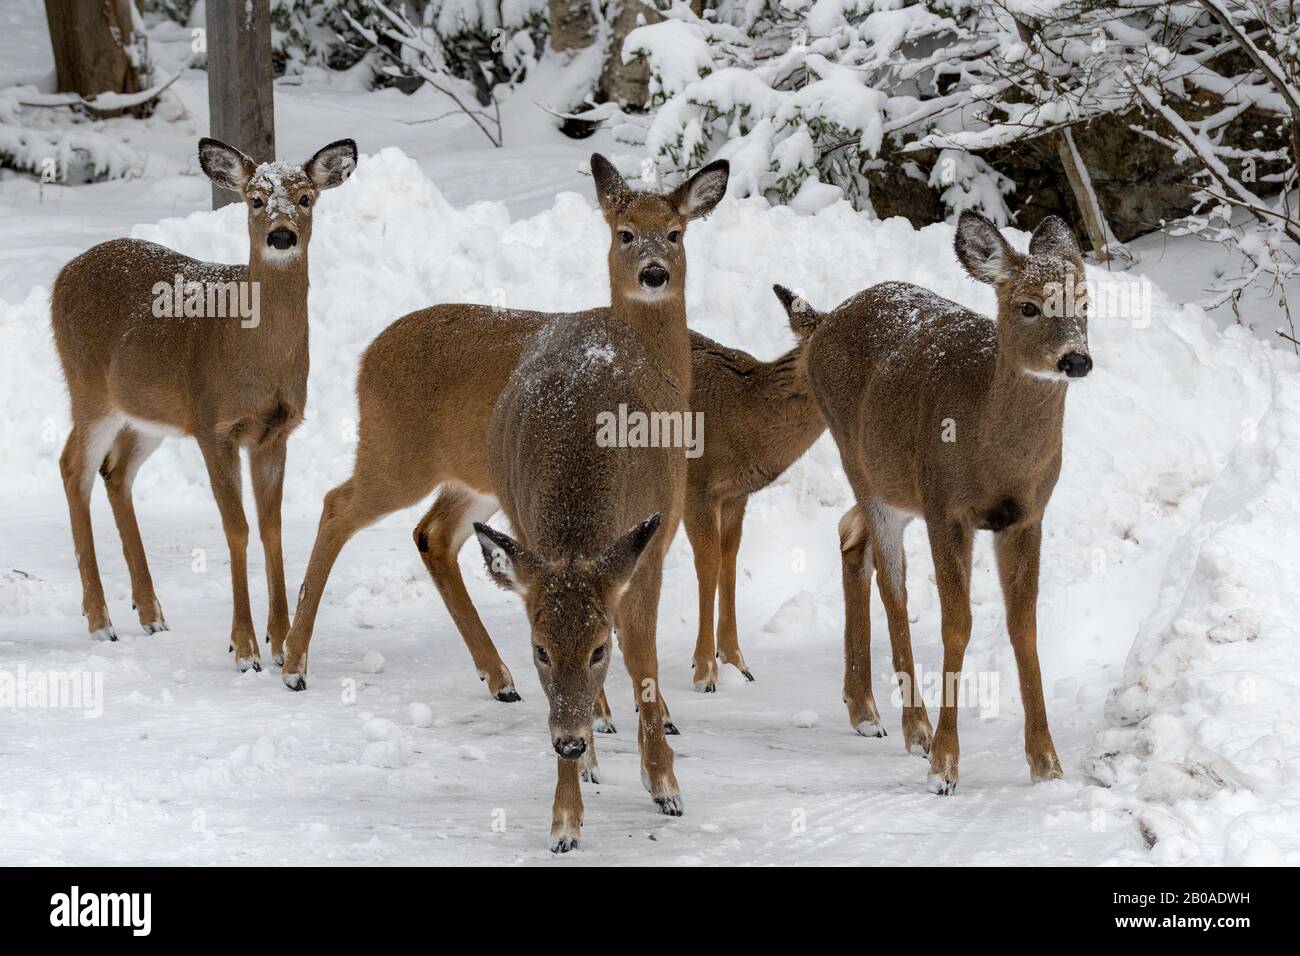 Un troupeau de cerfs en hiver. Il y a cinq cerfs, avec une raquette et des arbres enneigés en arrière-plan. Banque D'Images